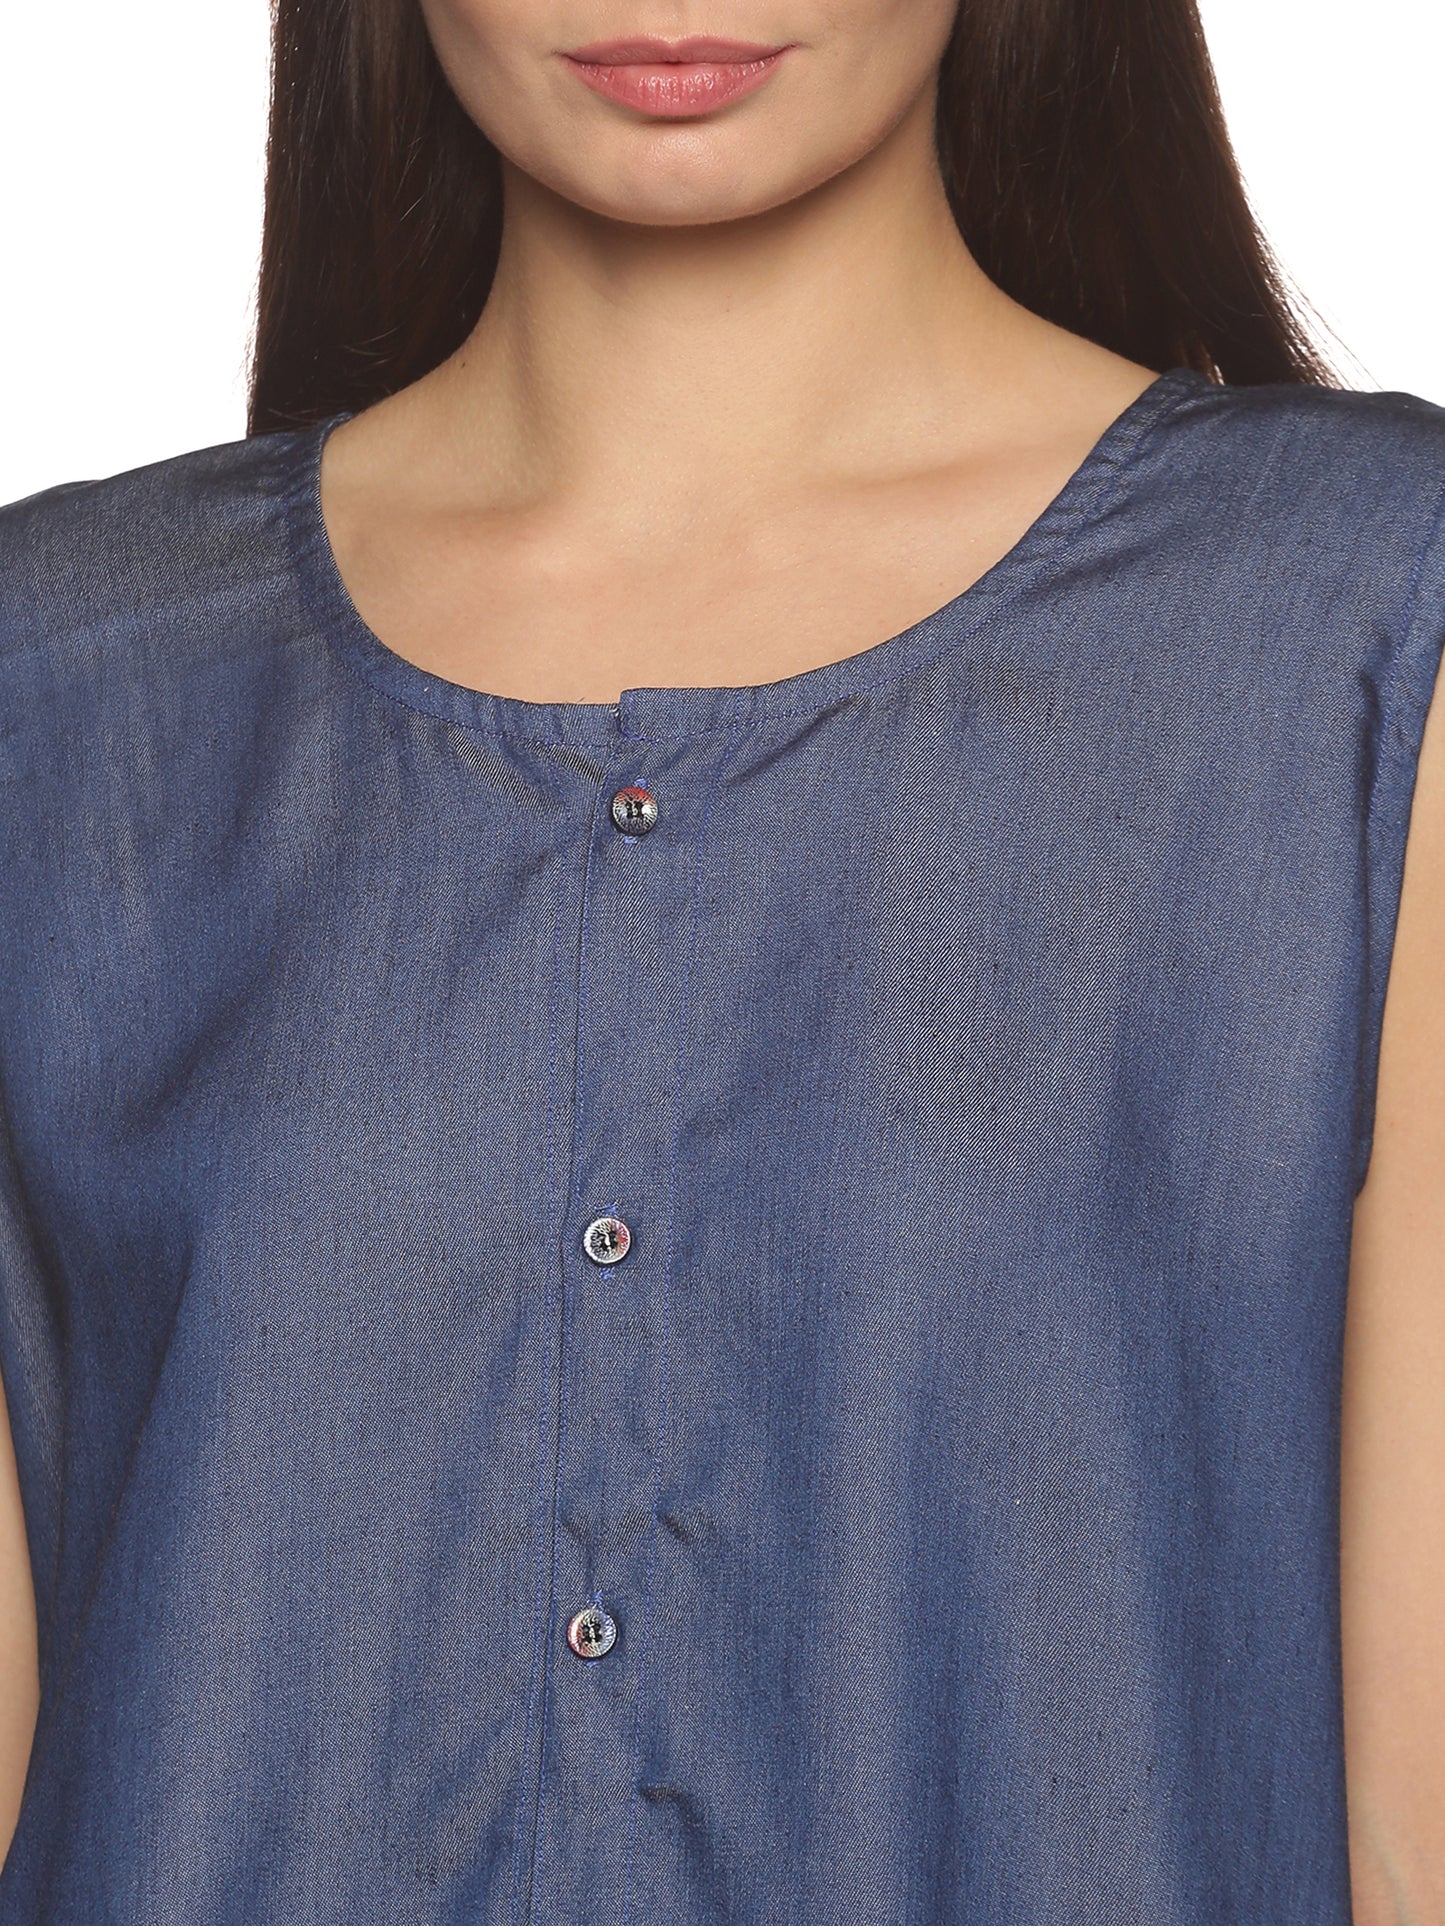 SAHORA Blue Denim Sleeveless Shirt Top